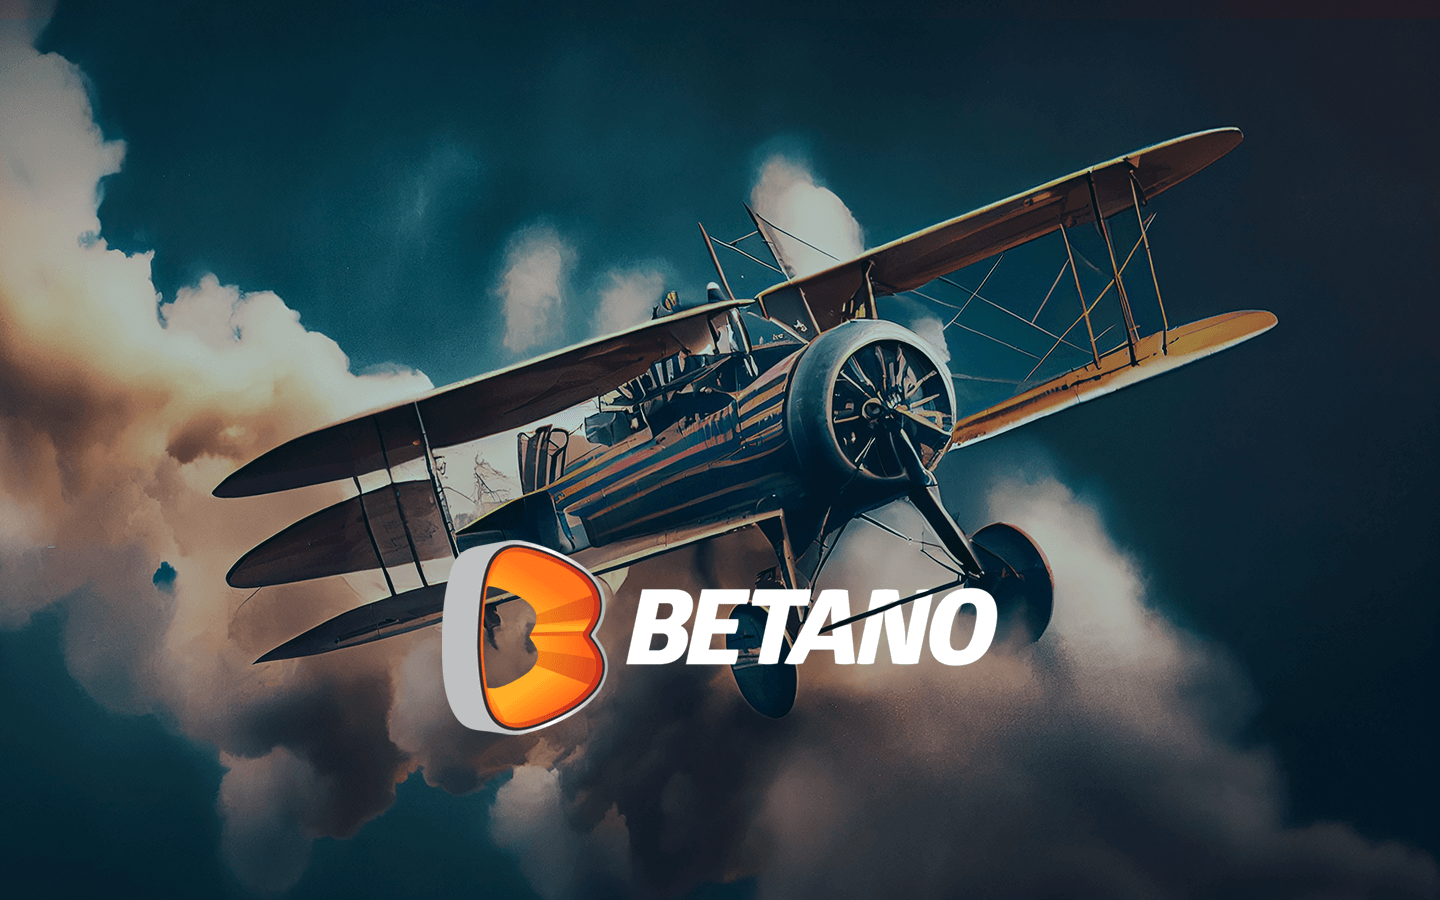 Aviator - conheça o novo jogo do Cassino Betano! 